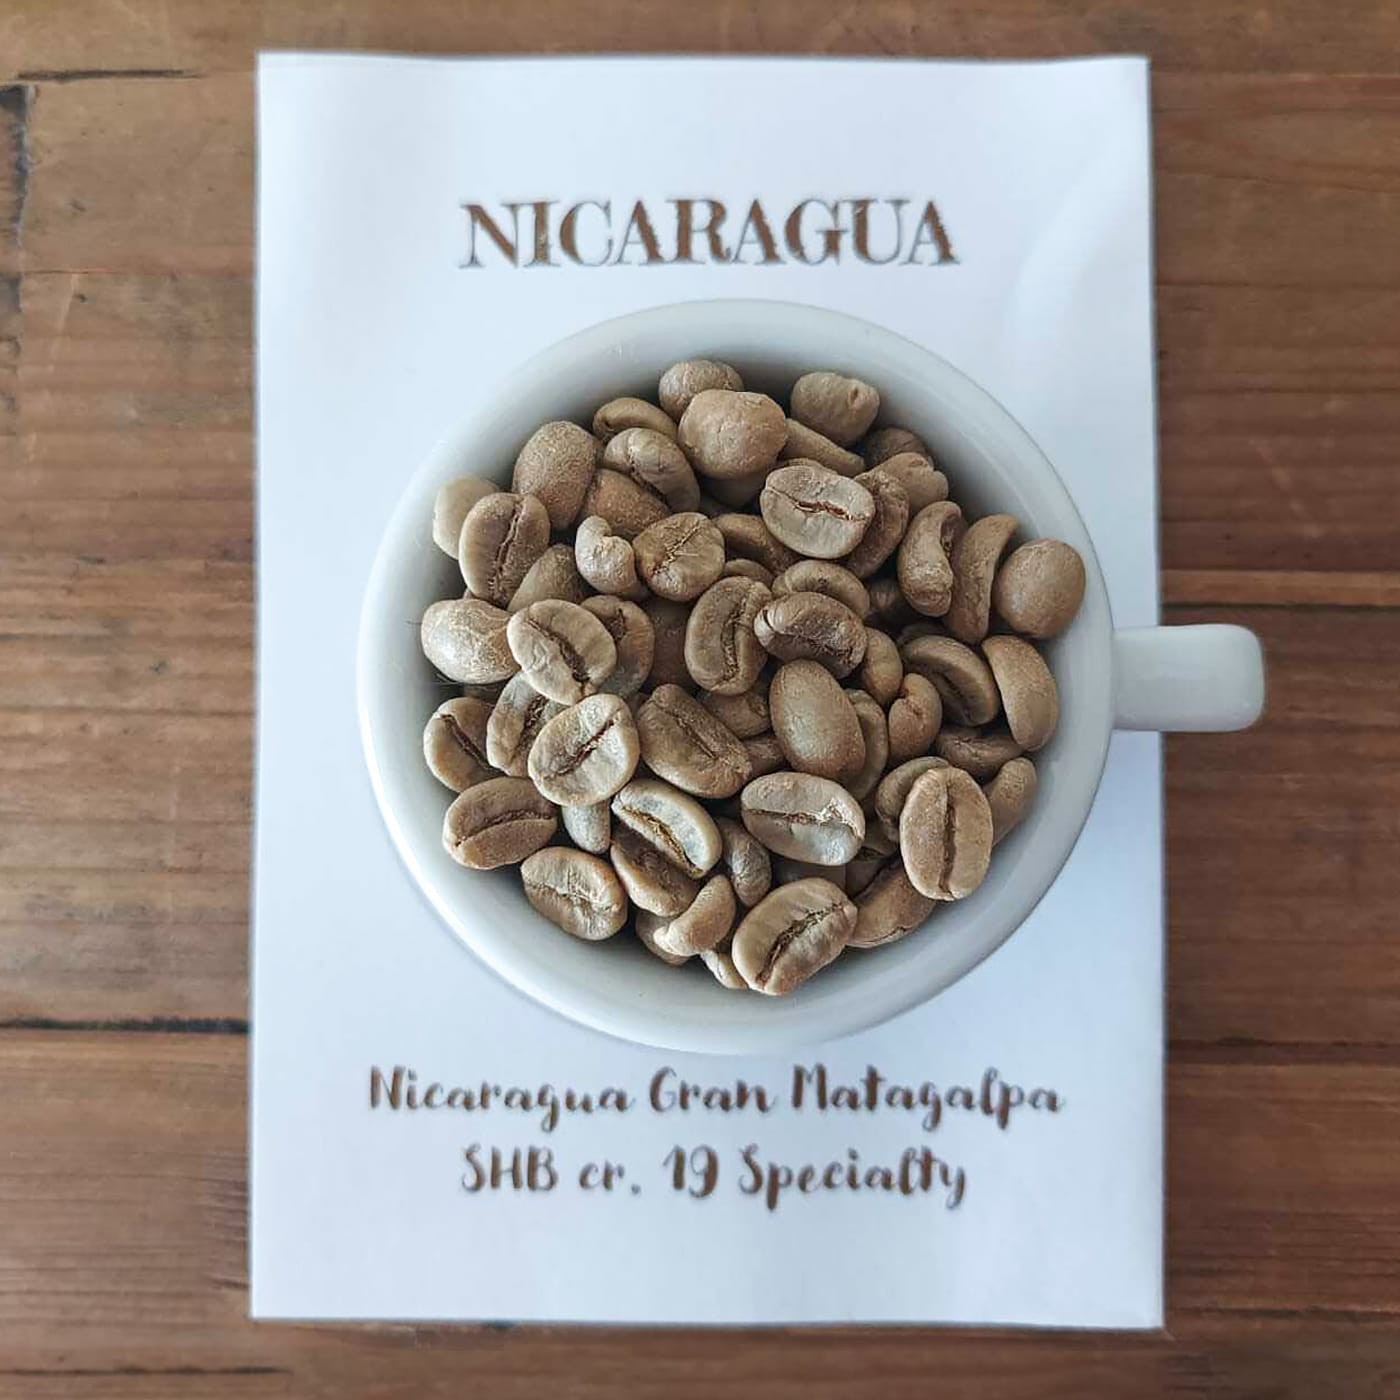 Nicaragua Gran Matagalpa Caffè Fusari